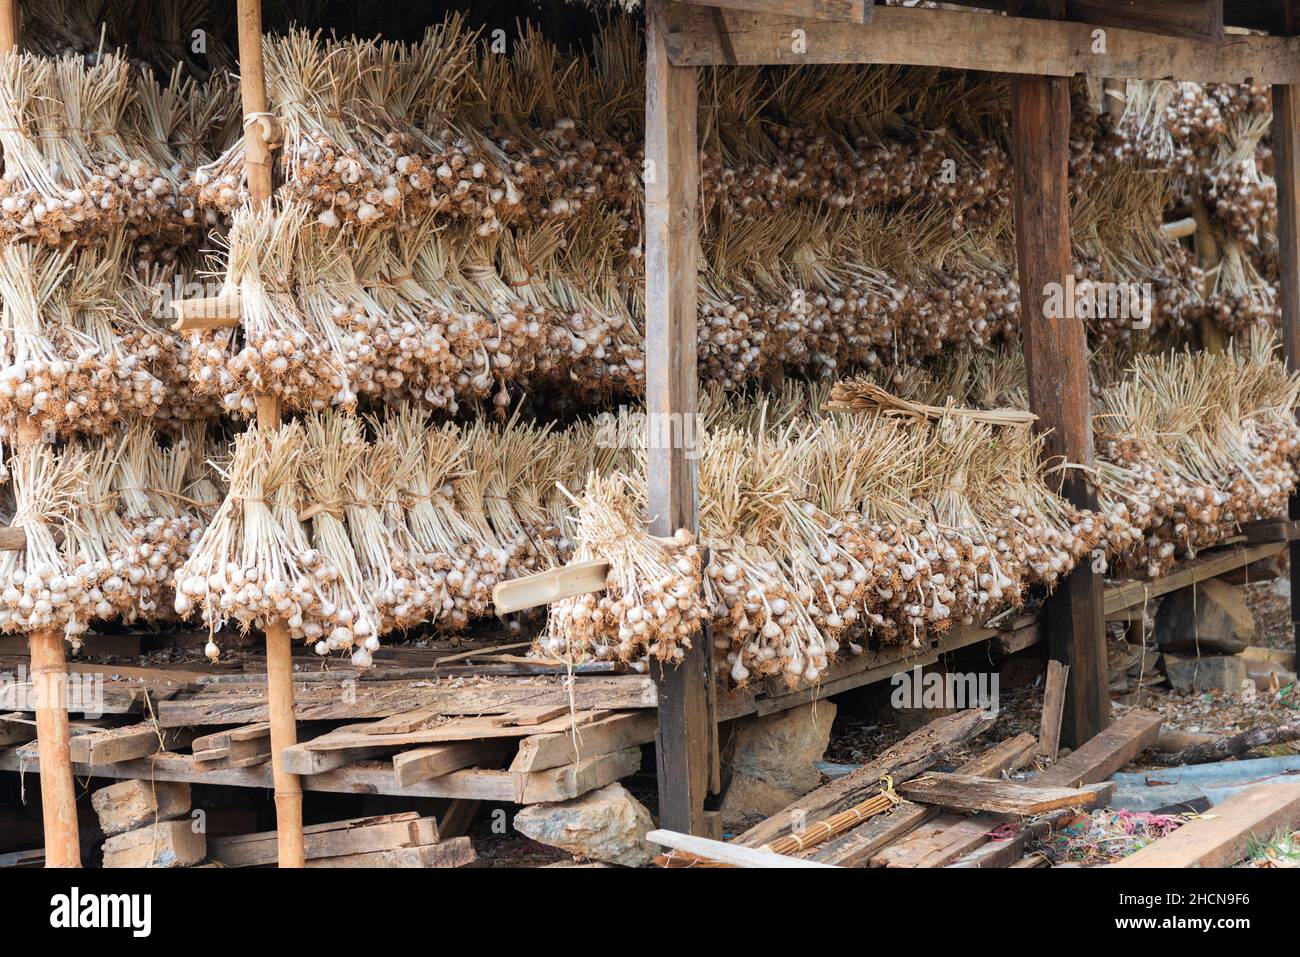 Manojos de ajo 'allium sativum', oriundo de asia Central, secando bajo cobertura en Myanmar antes conocido como Birmania, Asia Foto de stock